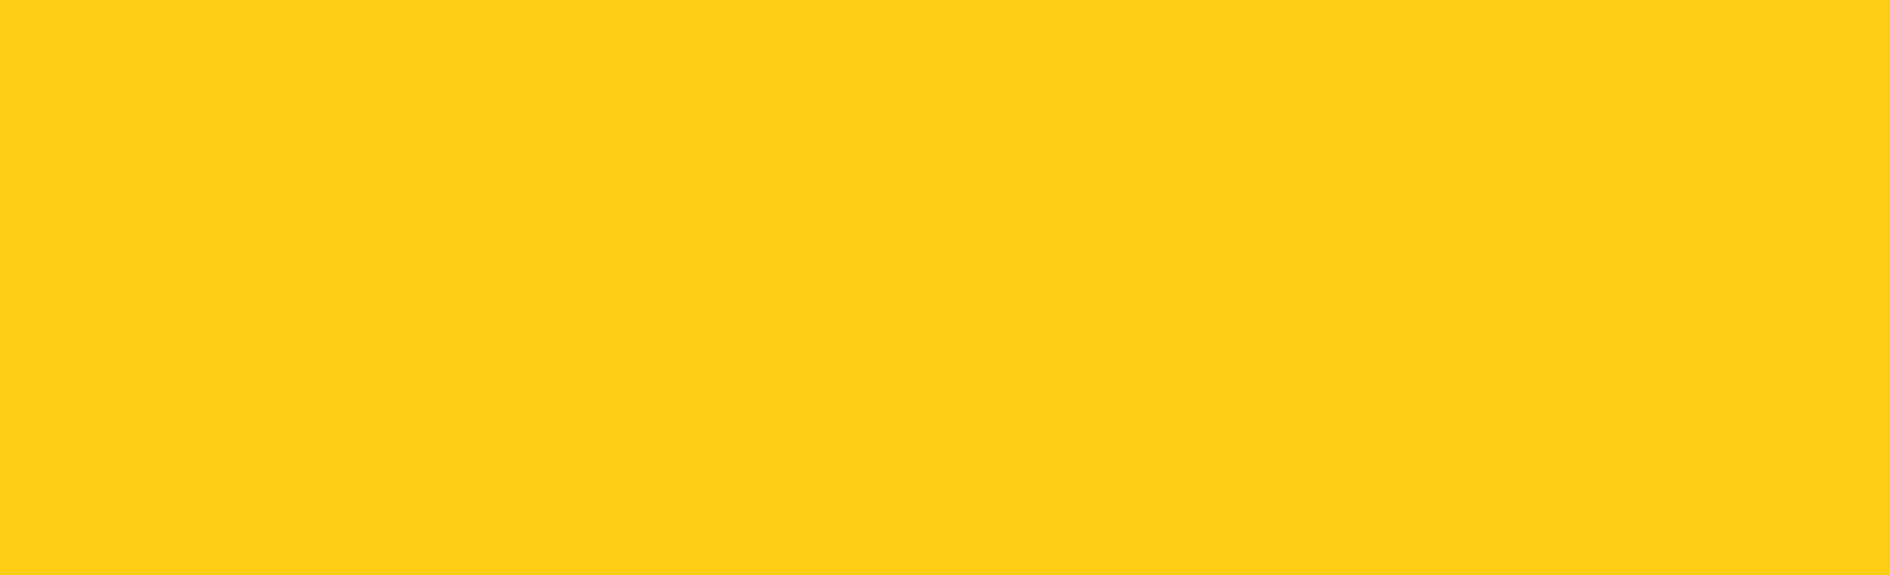 bg-yellow.jpg